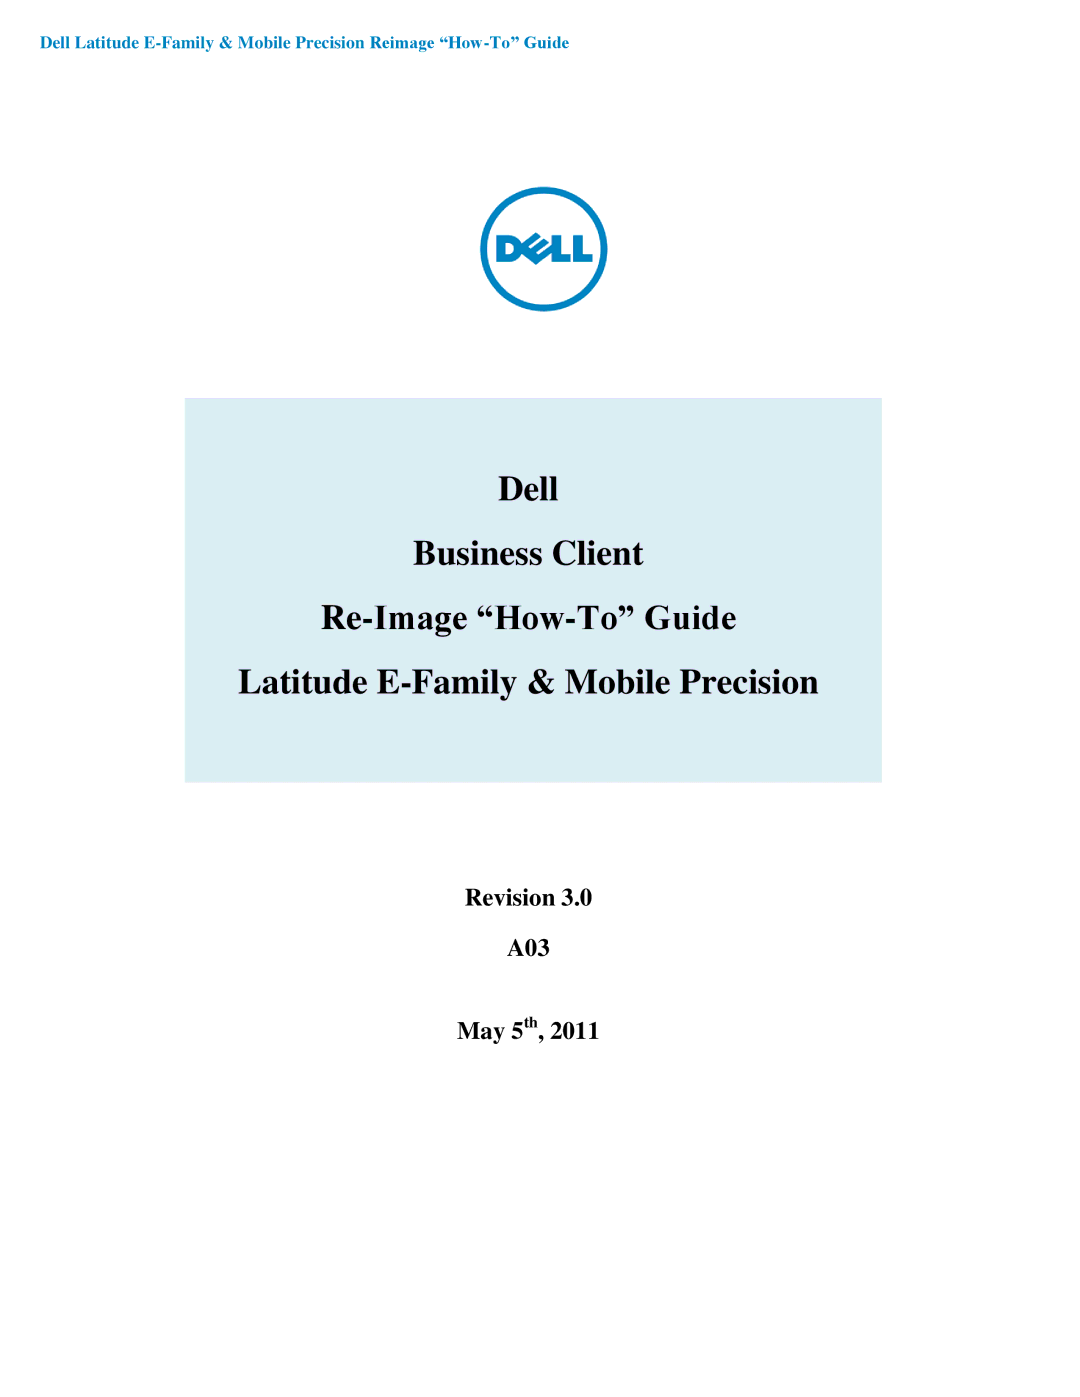 Dell manual Revision A03 May 5th 